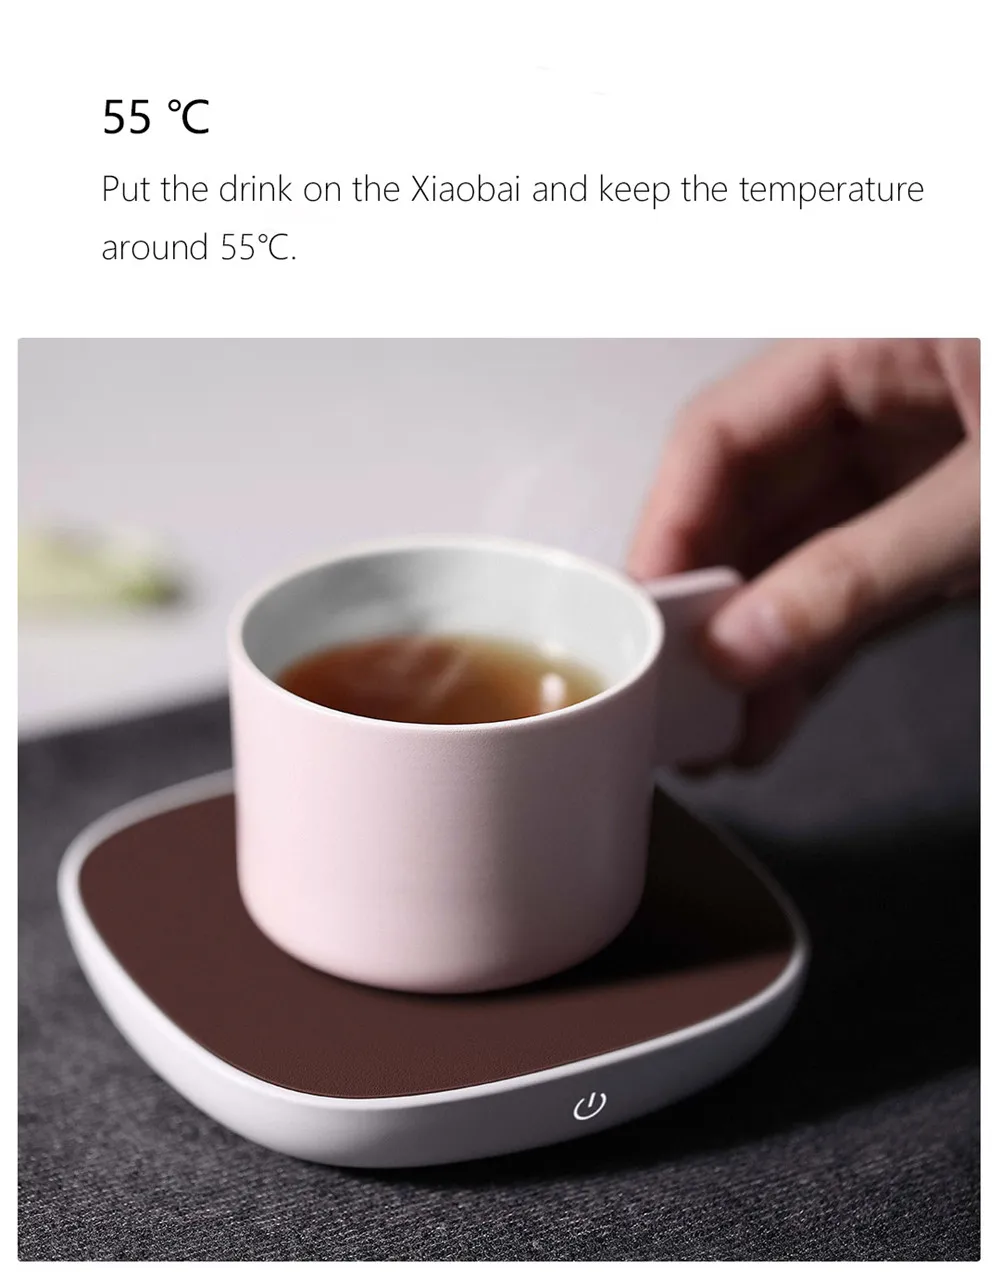 Sanjie нагревающая подставка Электрический поднос кофе чай напиток теплые подставки нагреватель 55℃ термостат изоляция базовый Коврик